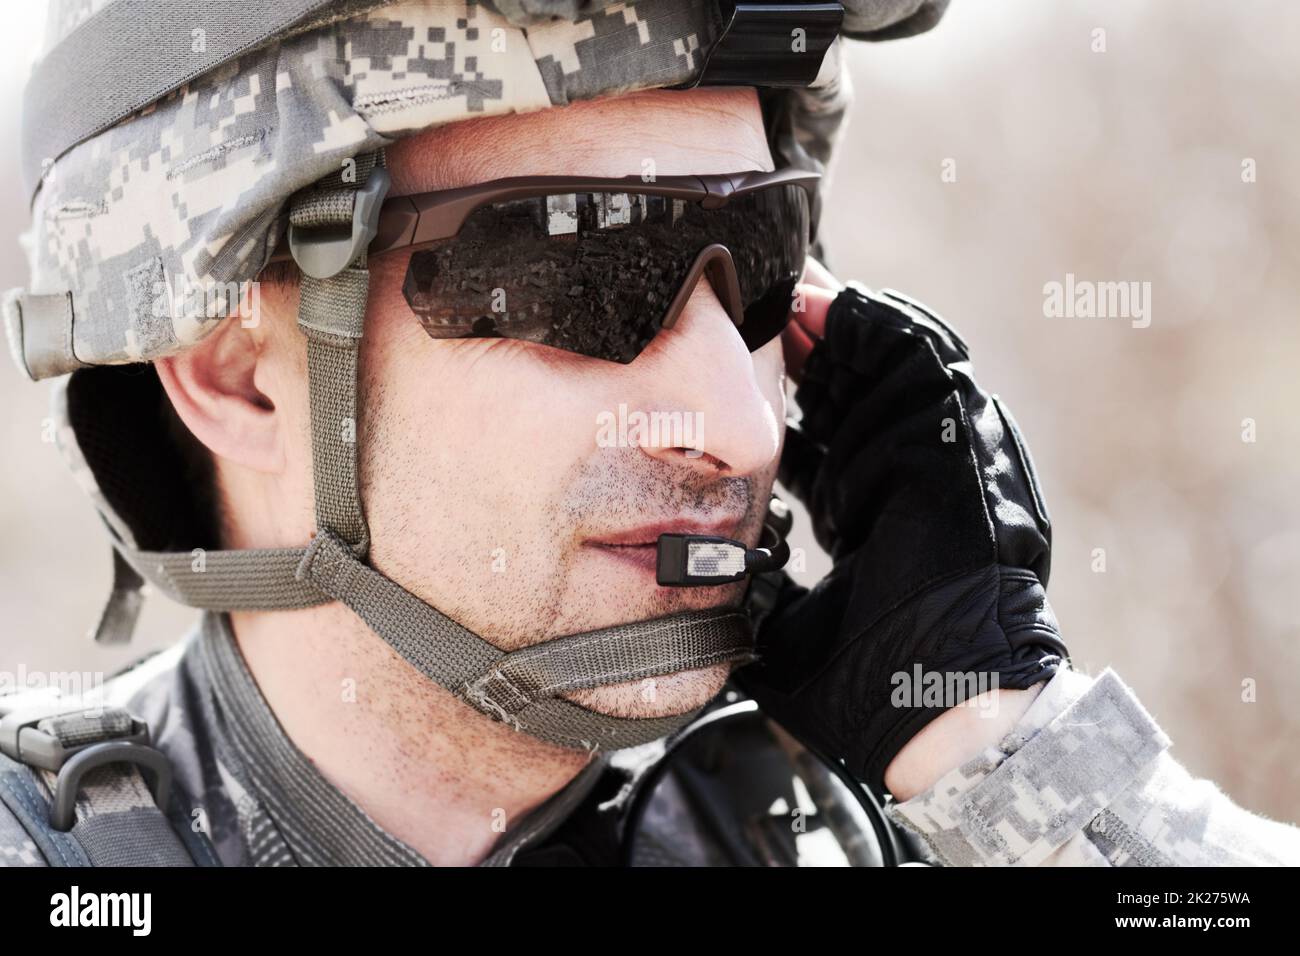 Garder la communication sur commande.Gros plan sur le profil d'un soldat communiquant avec son casque. Banque D'Images